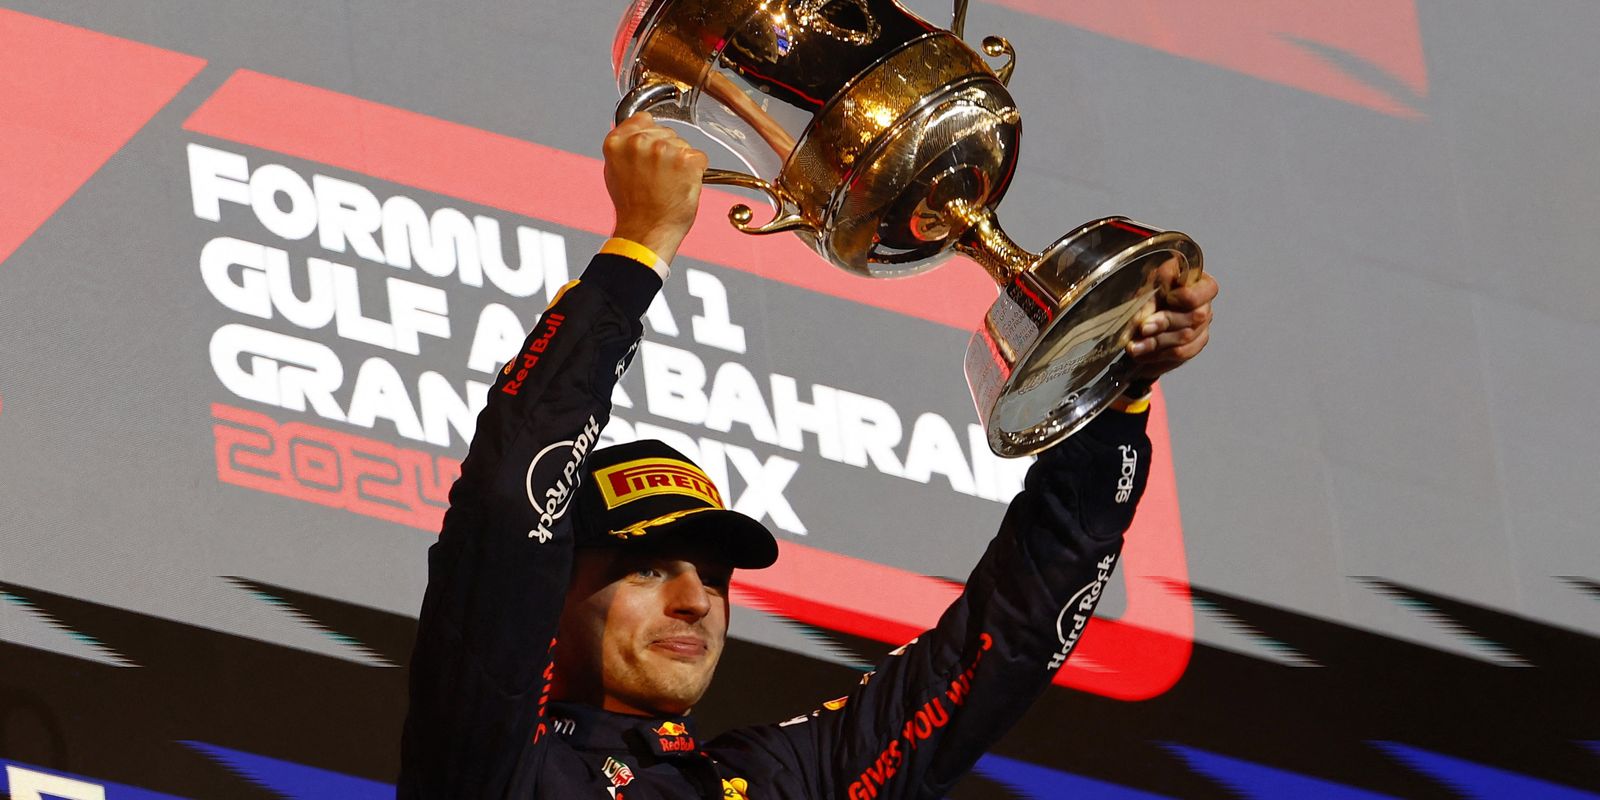 max-verstappen-abre-temporada-da-formula-1-com-vitoria-no-bahrein